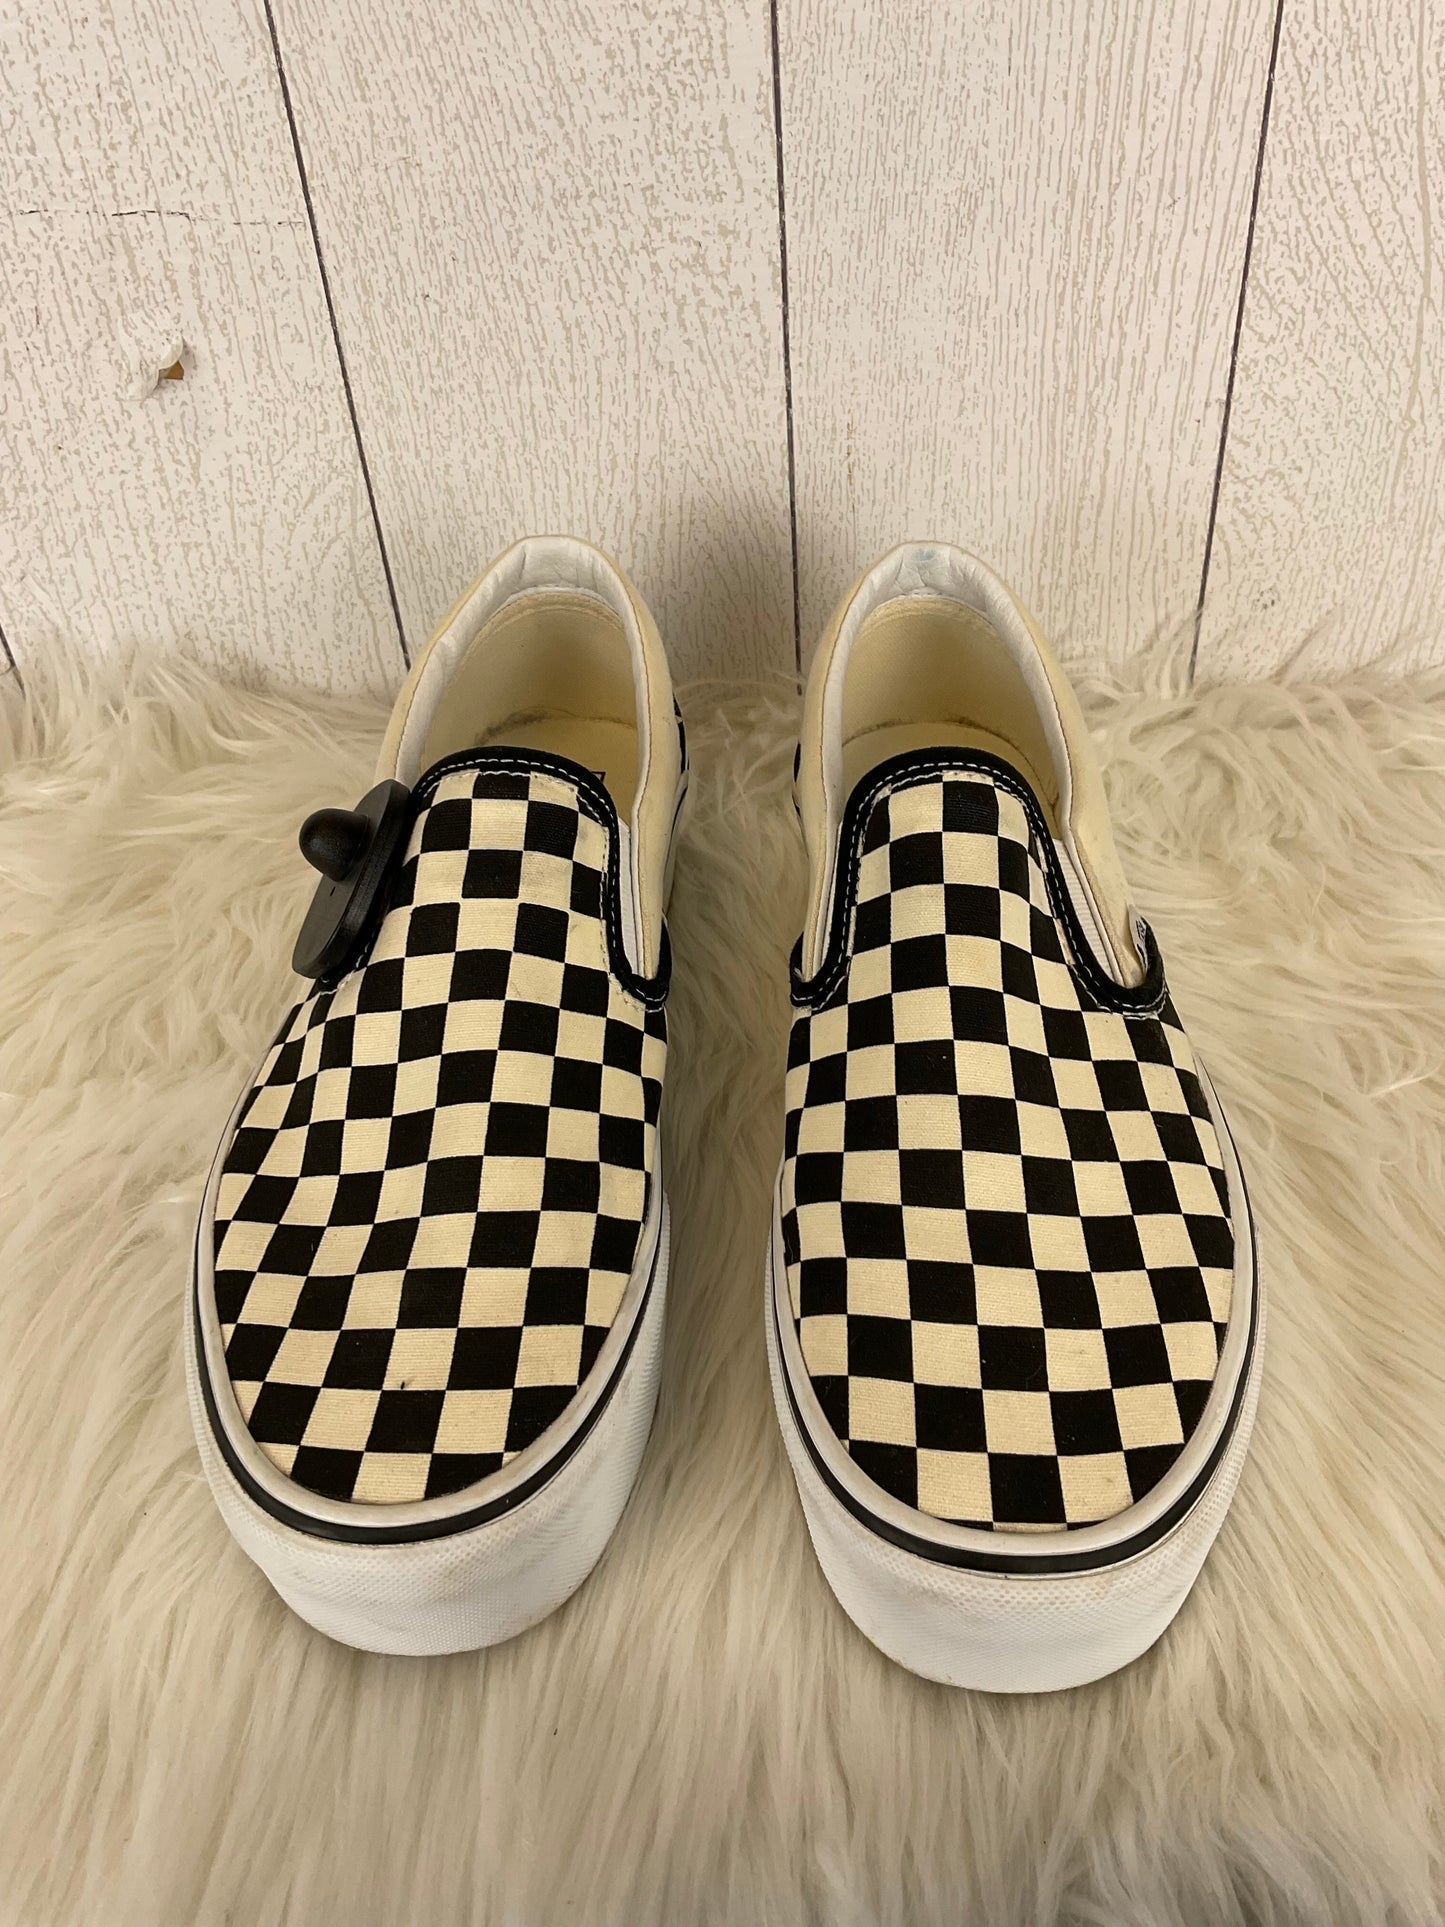 Black & White Shoes Flats Vans, Size 11